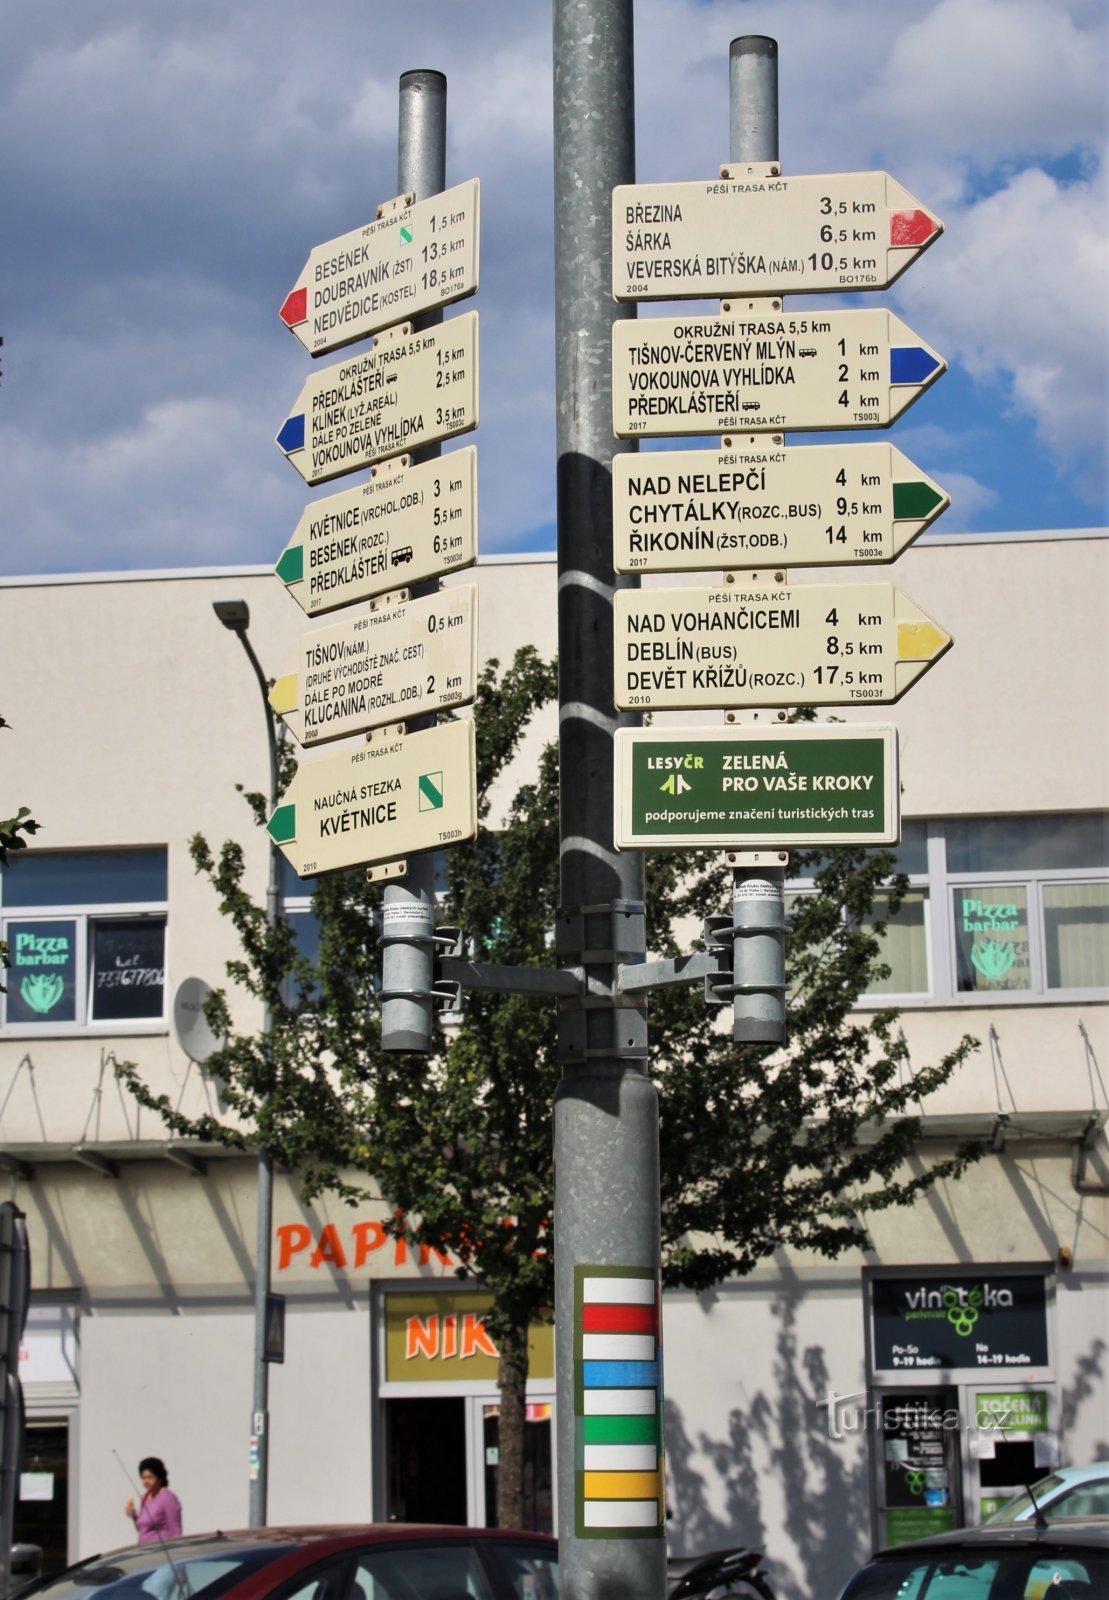 Devant le bâtiment de la gare se trouve un guide touristique recto-verso aux quatre couleurs